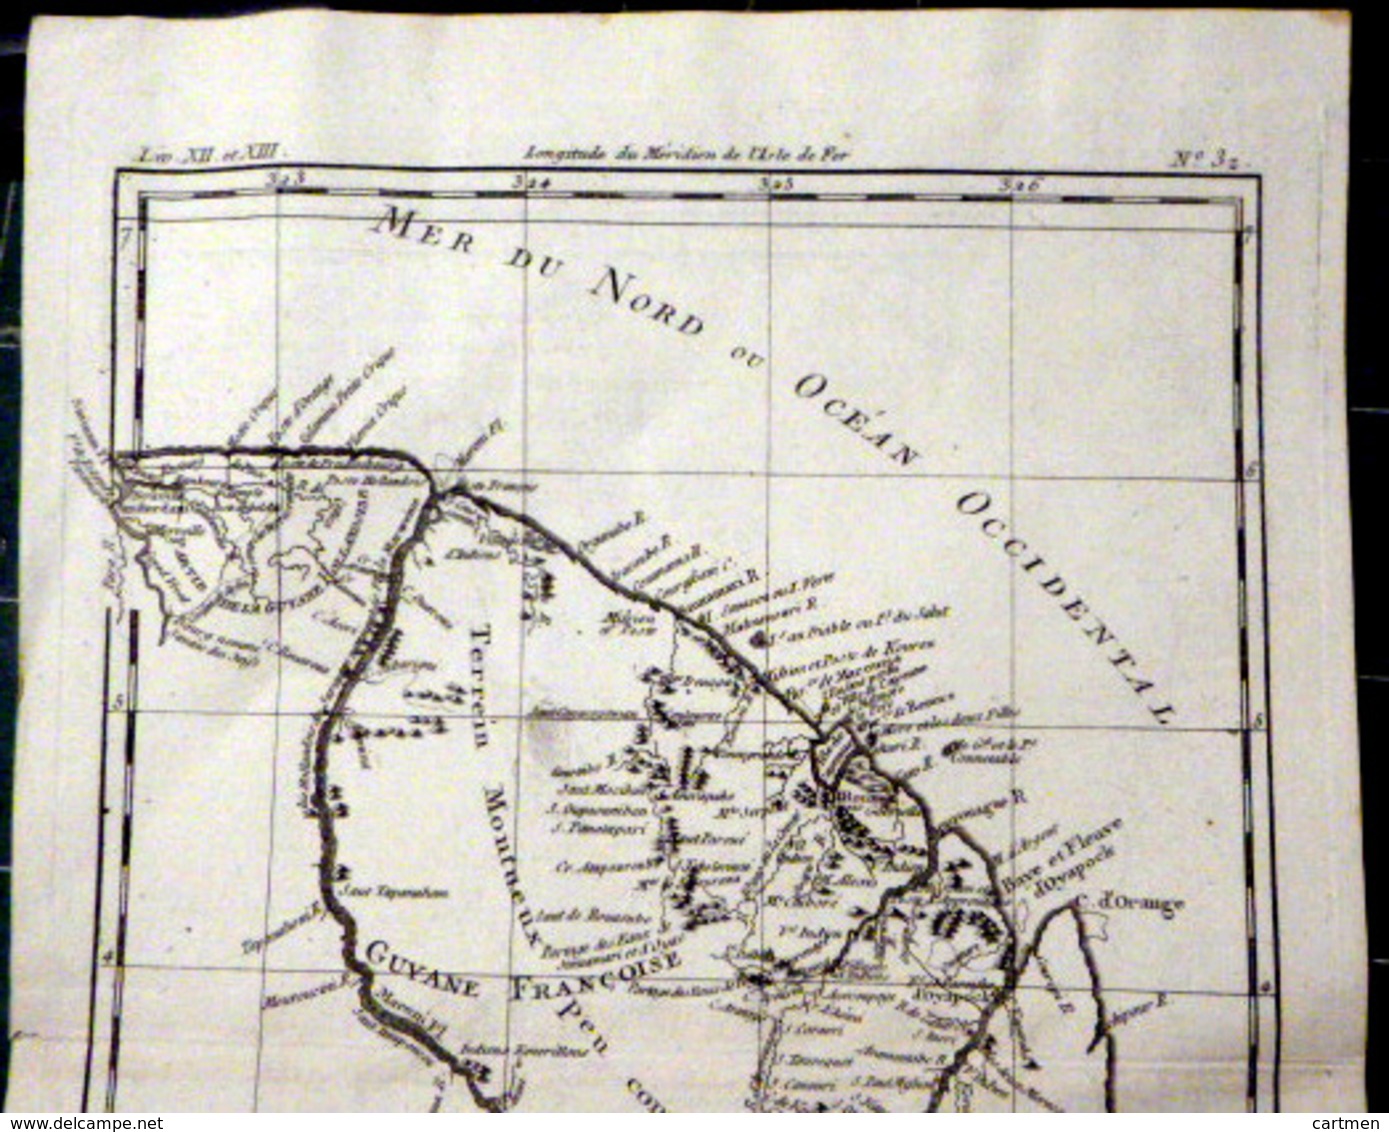 GUYANE FRANCAISE CARTE GEOGRAPHIQUE 18° GUYANE DRESSEE PAR BONNE VERS 1770 BEL ETAT 37 X 24 CM AUTHENTIQUE DECORATIVE - Cartes Géographiques